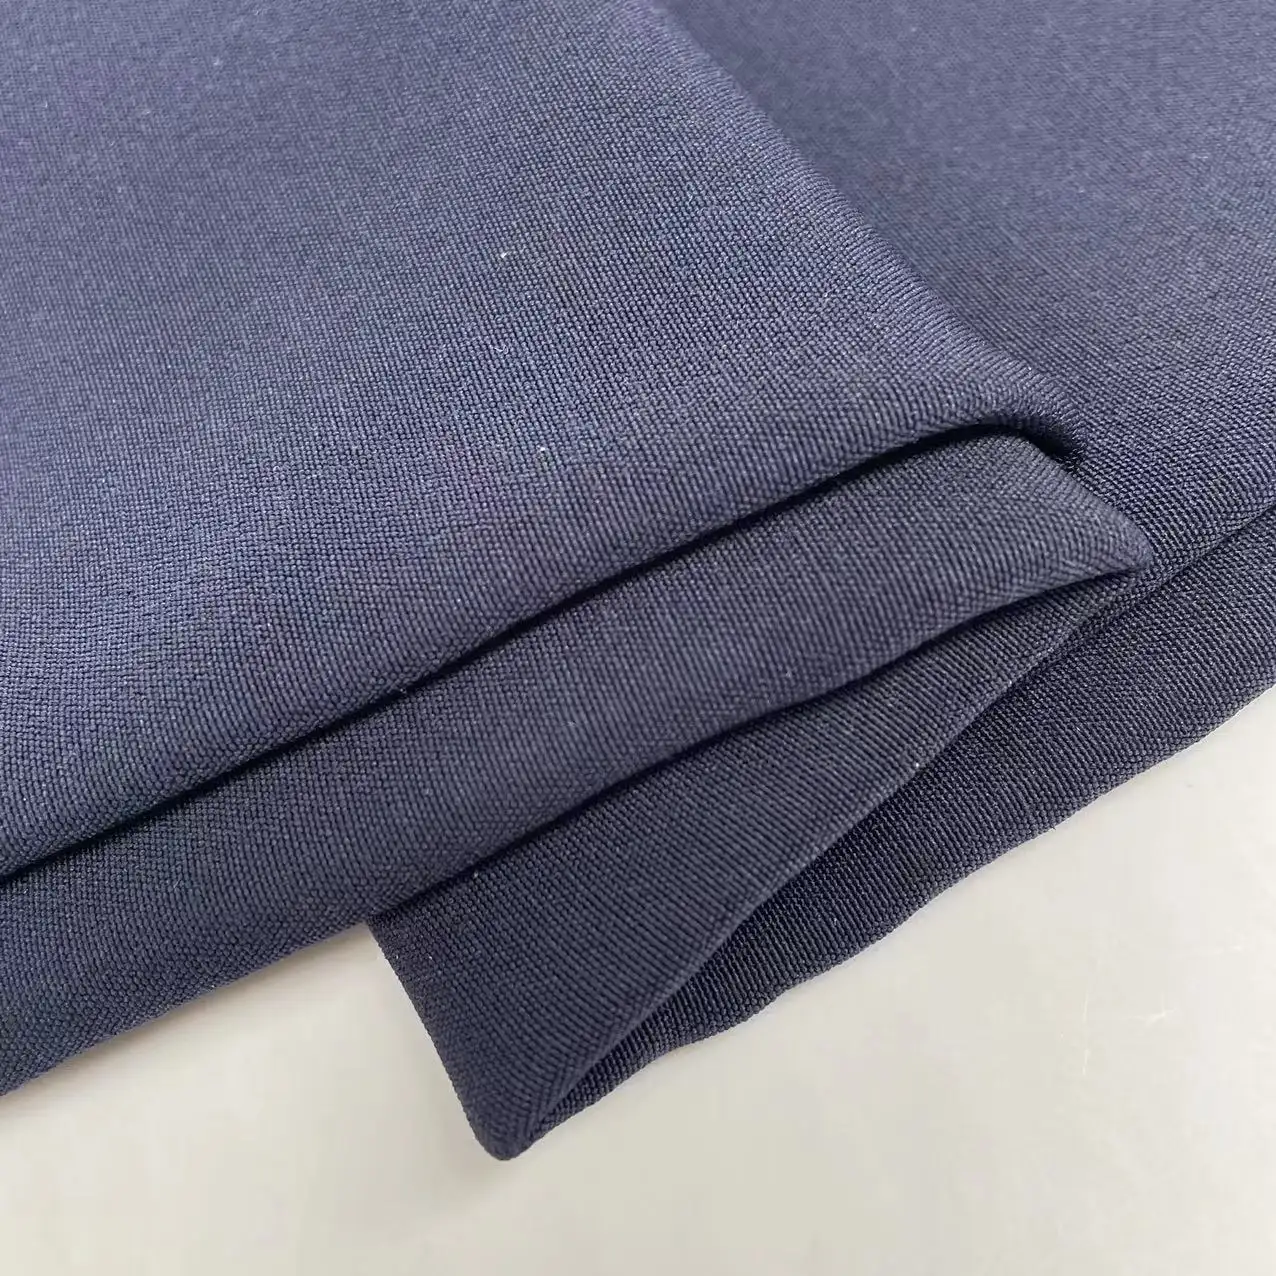 TTR bengaline tecido tecido elástico spandex urdidura para calças uniformes